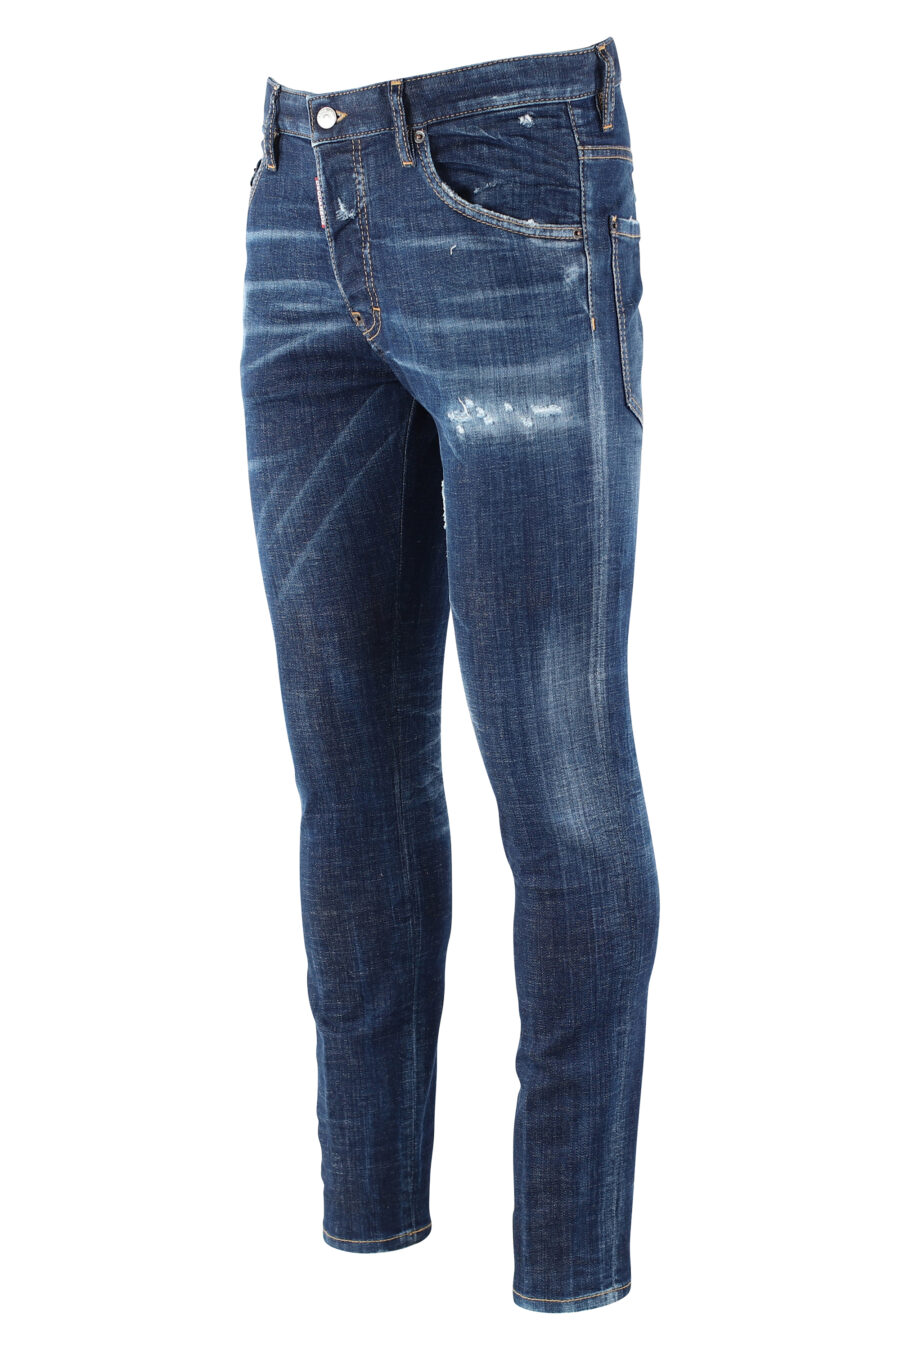 Pantalón vaquero "icon skater jean" azul oscuro semidesgastado - IMG 9655